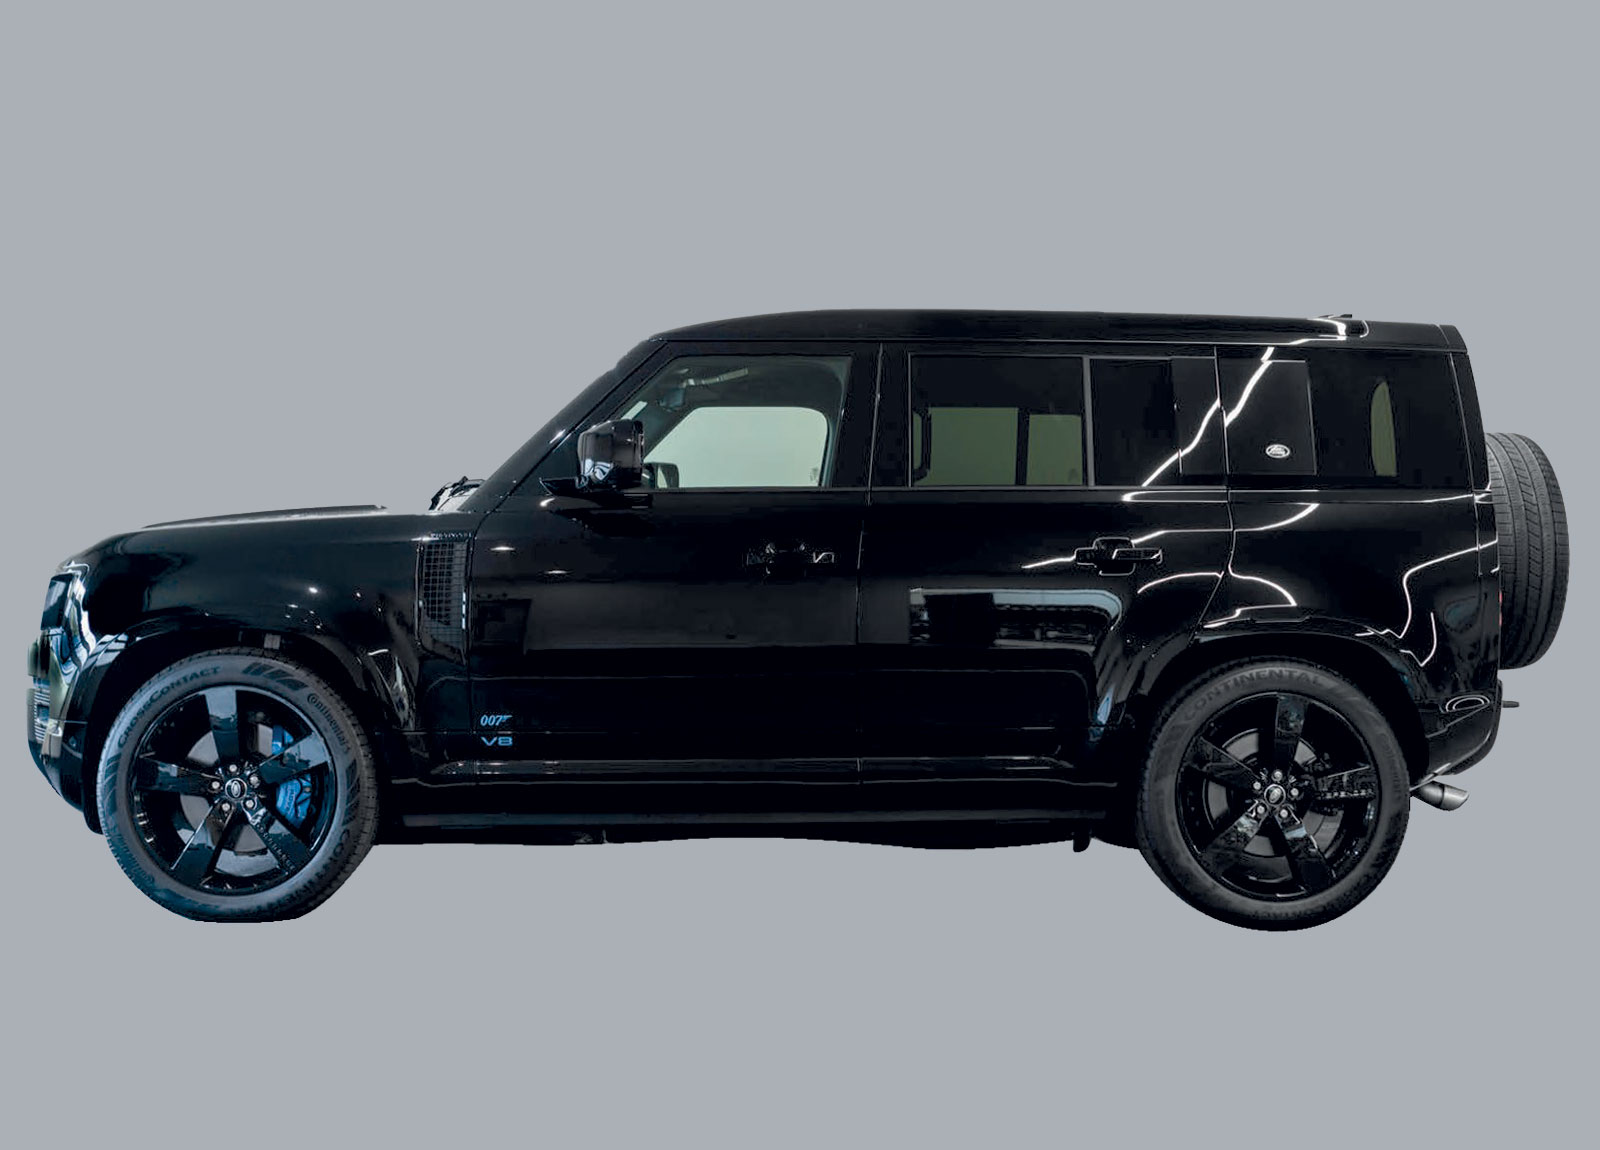 Land Rover Defender 110 James Bond Edition For Sale side